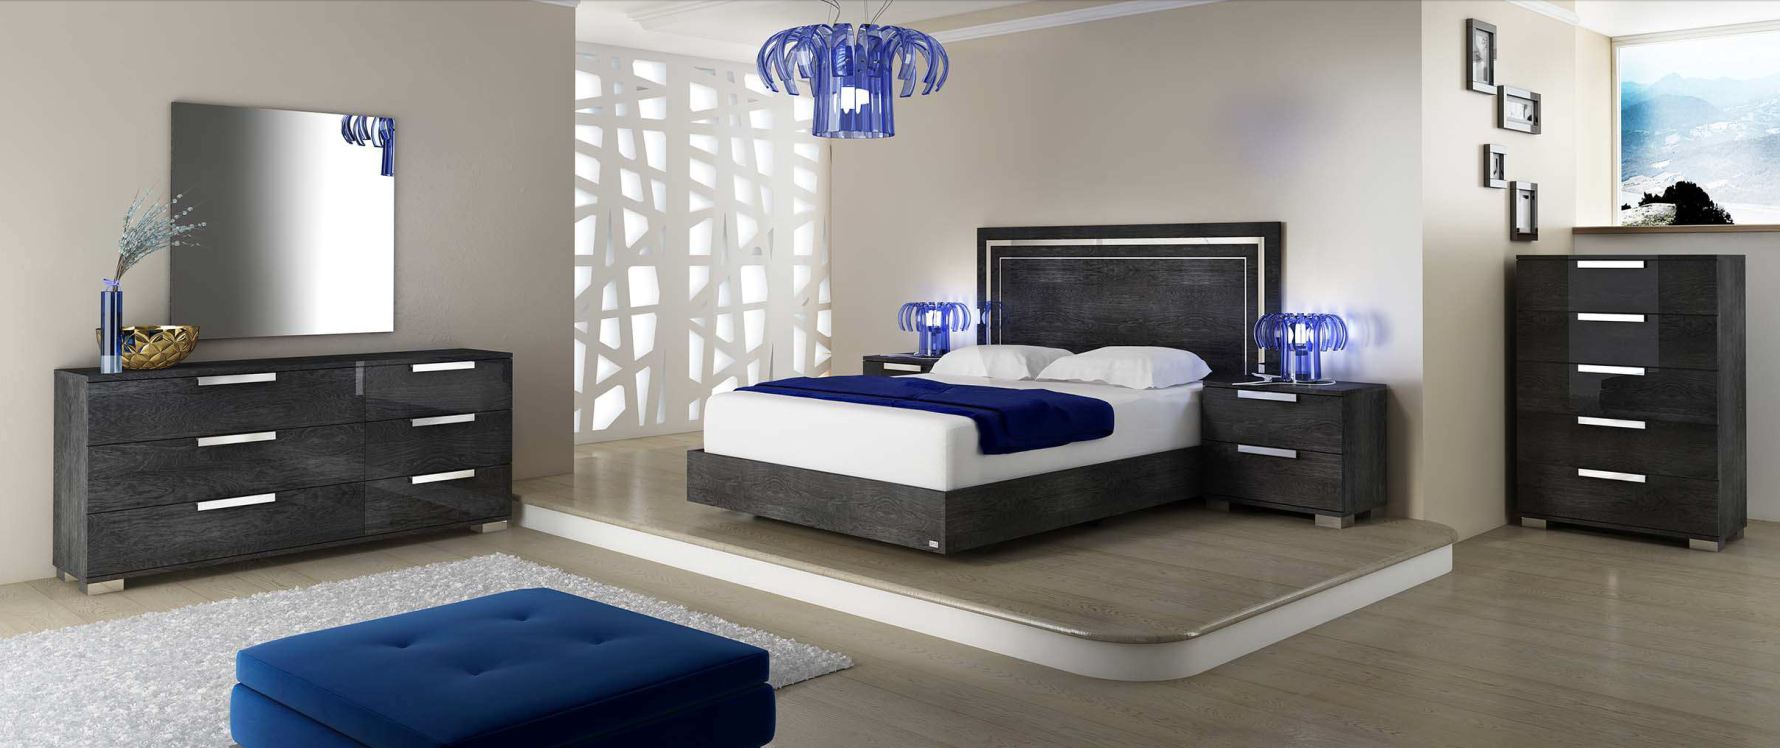 Итальянская спальня Sarah Modern (кровать со сп.местом 160*200 + 2 тумбочки + комод 6 ящиков + зеркало) фабрики STATUS